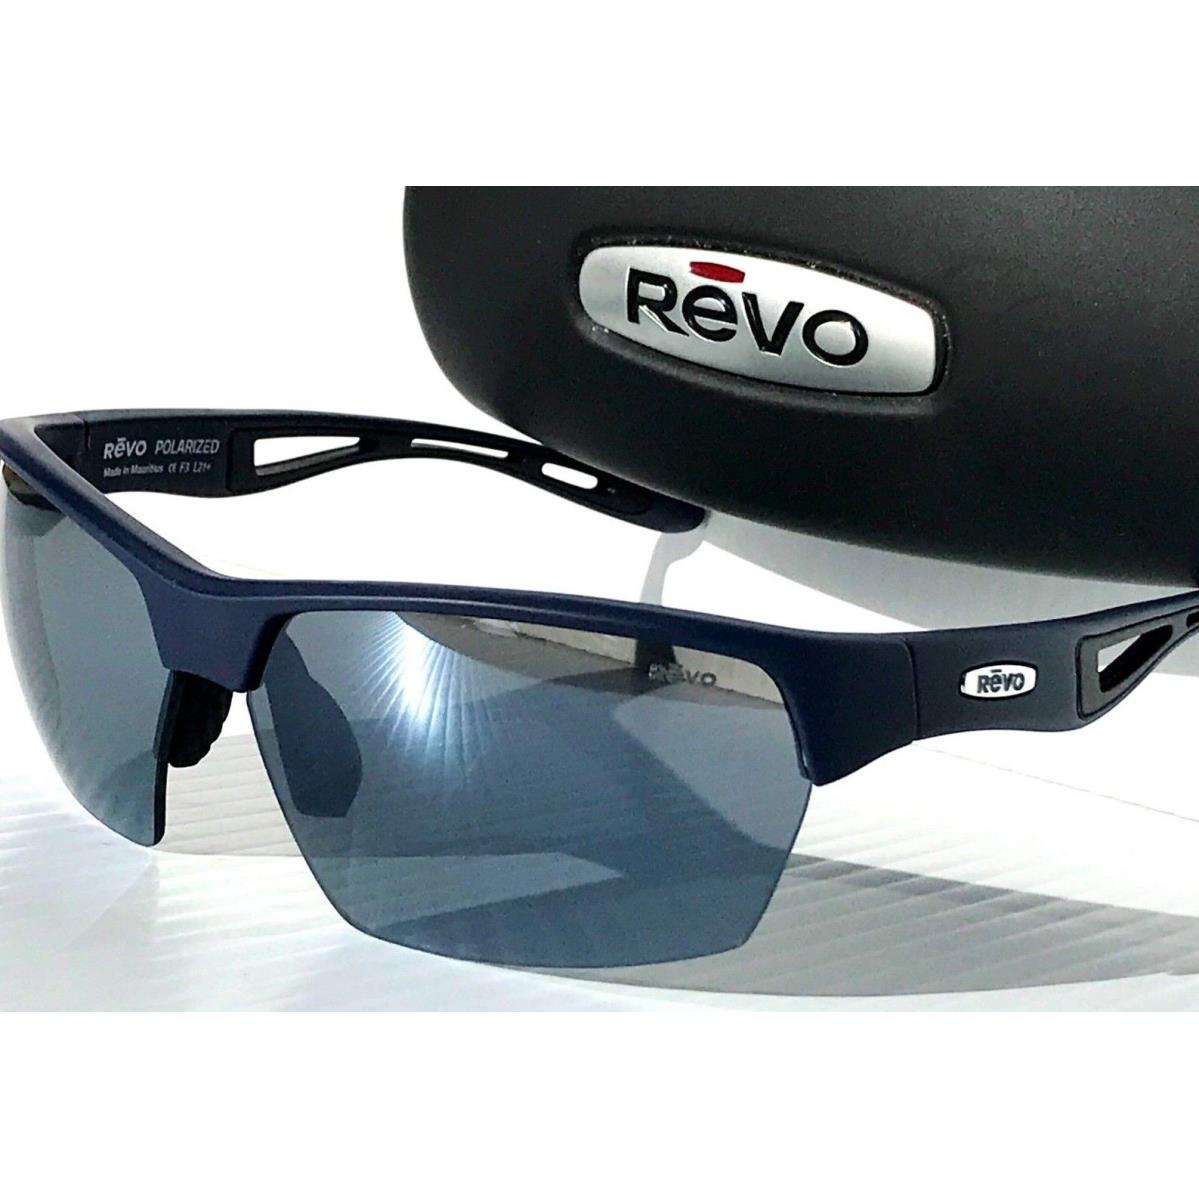 Revo sunglasses JETT - Navy Frame, Gray Lens 8